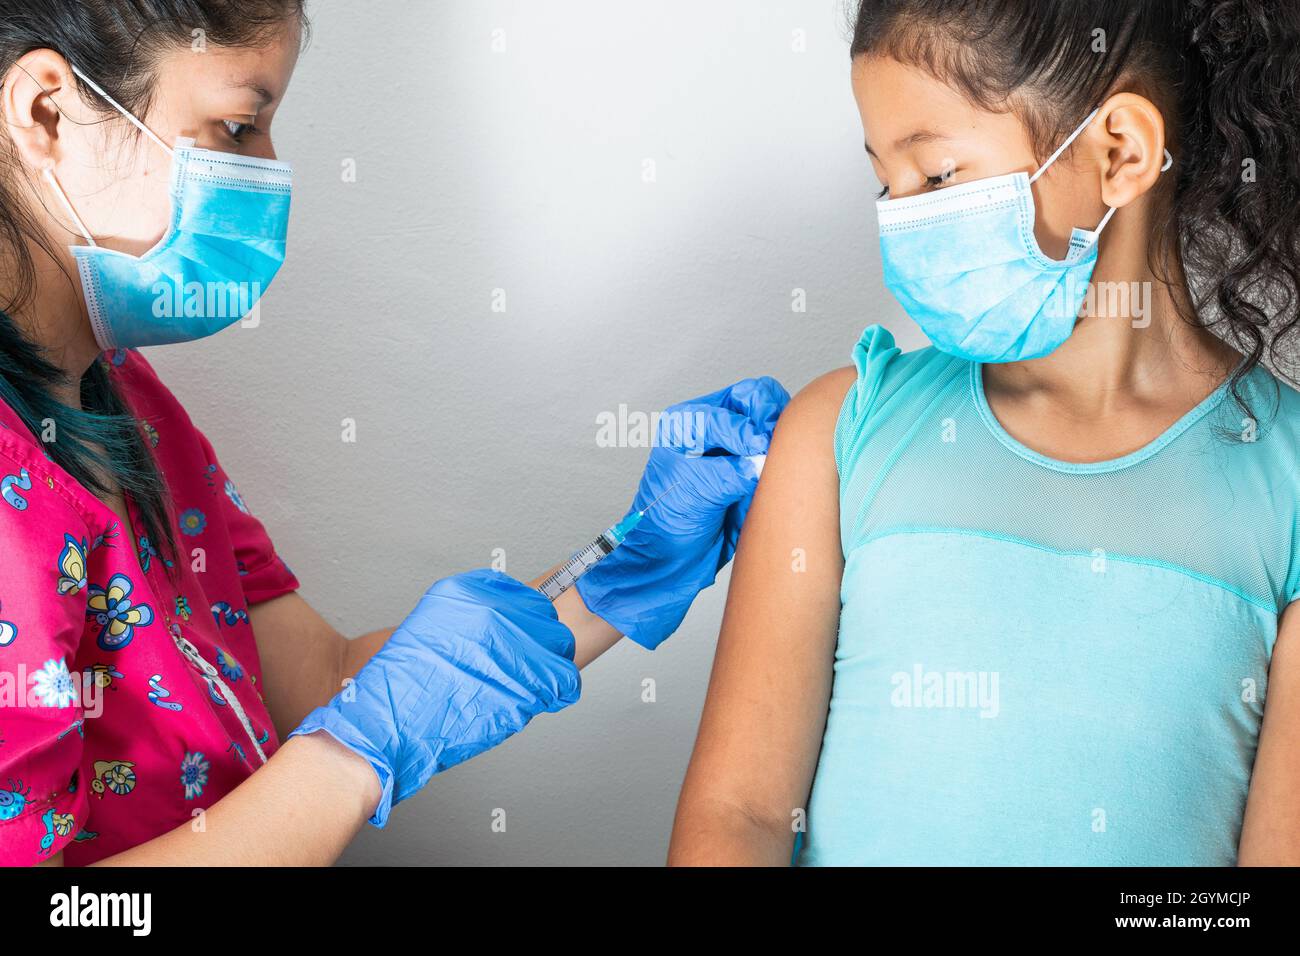 Kinderkrankenschwester Injektionsarm des braunen Mädchens. Arzt injiziert covid-19-Impfstoff. Krankenschwester entfernt Spritze vom Arm, Grippe-Impfstoff. Medizinisches Konzept, Gesundheit Stockfoto